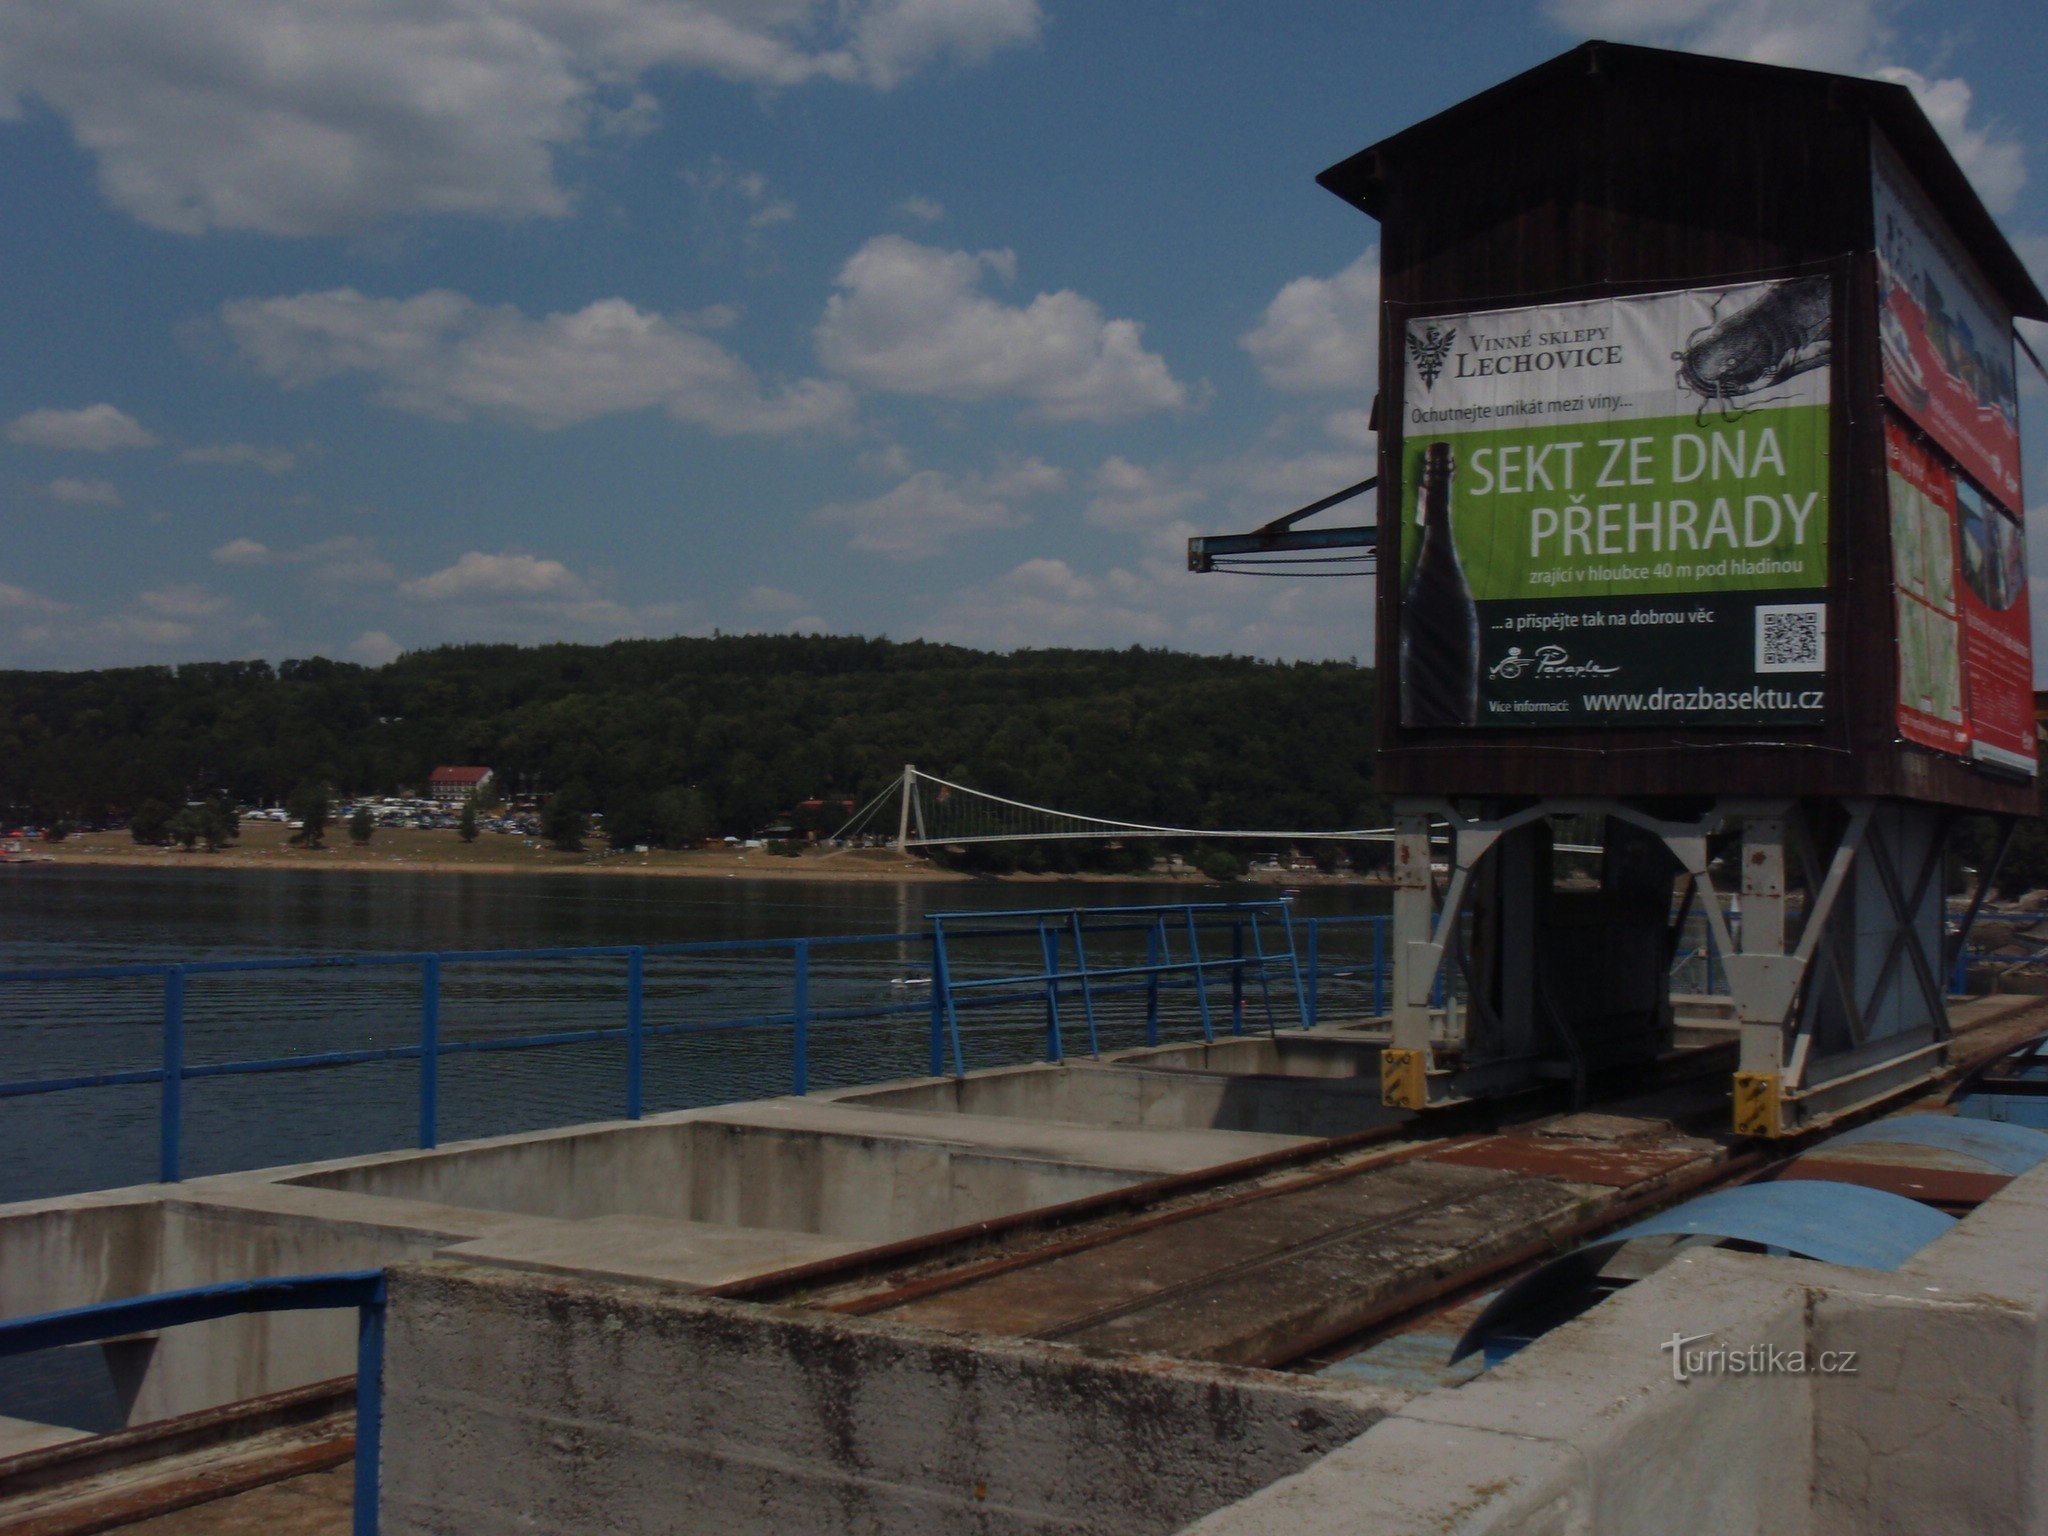 plakát na hrázi Vranovské přehrady oznamuje akci